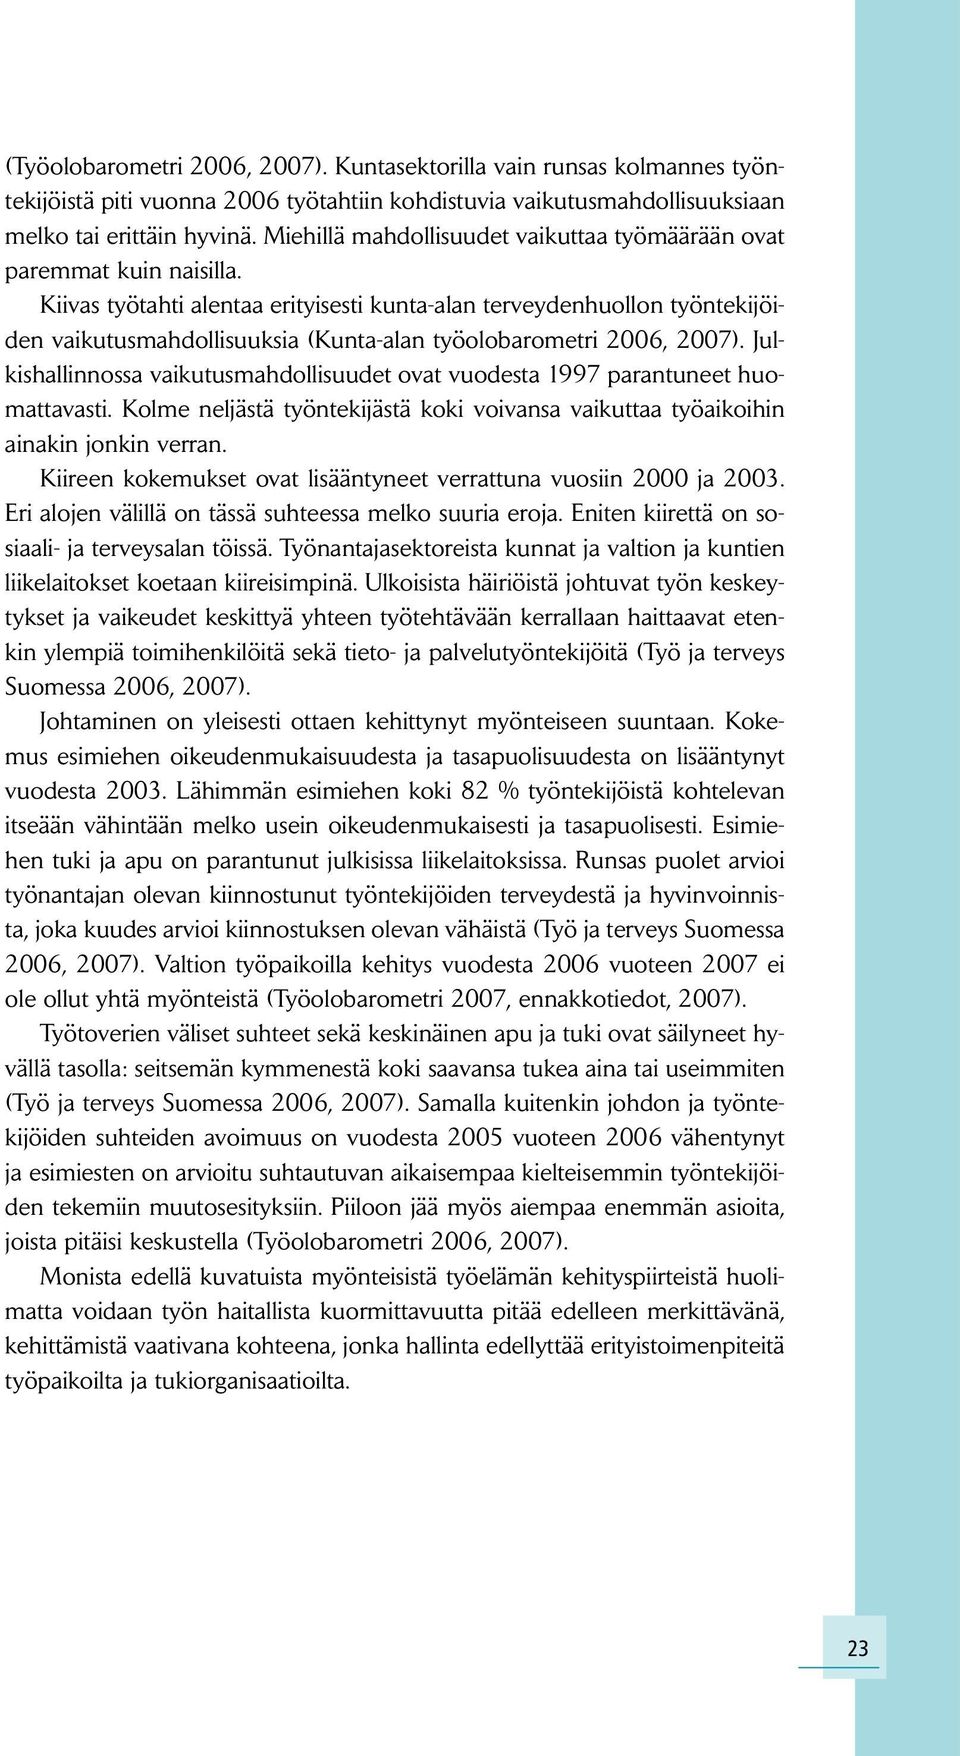 Kiivas työtahti alentaa erityisesti kunta-alan terveydenhuollon työntekijöiden vaikutusmahdollisuuksia (Kunta-alan työolobarometri 2006, 2007).